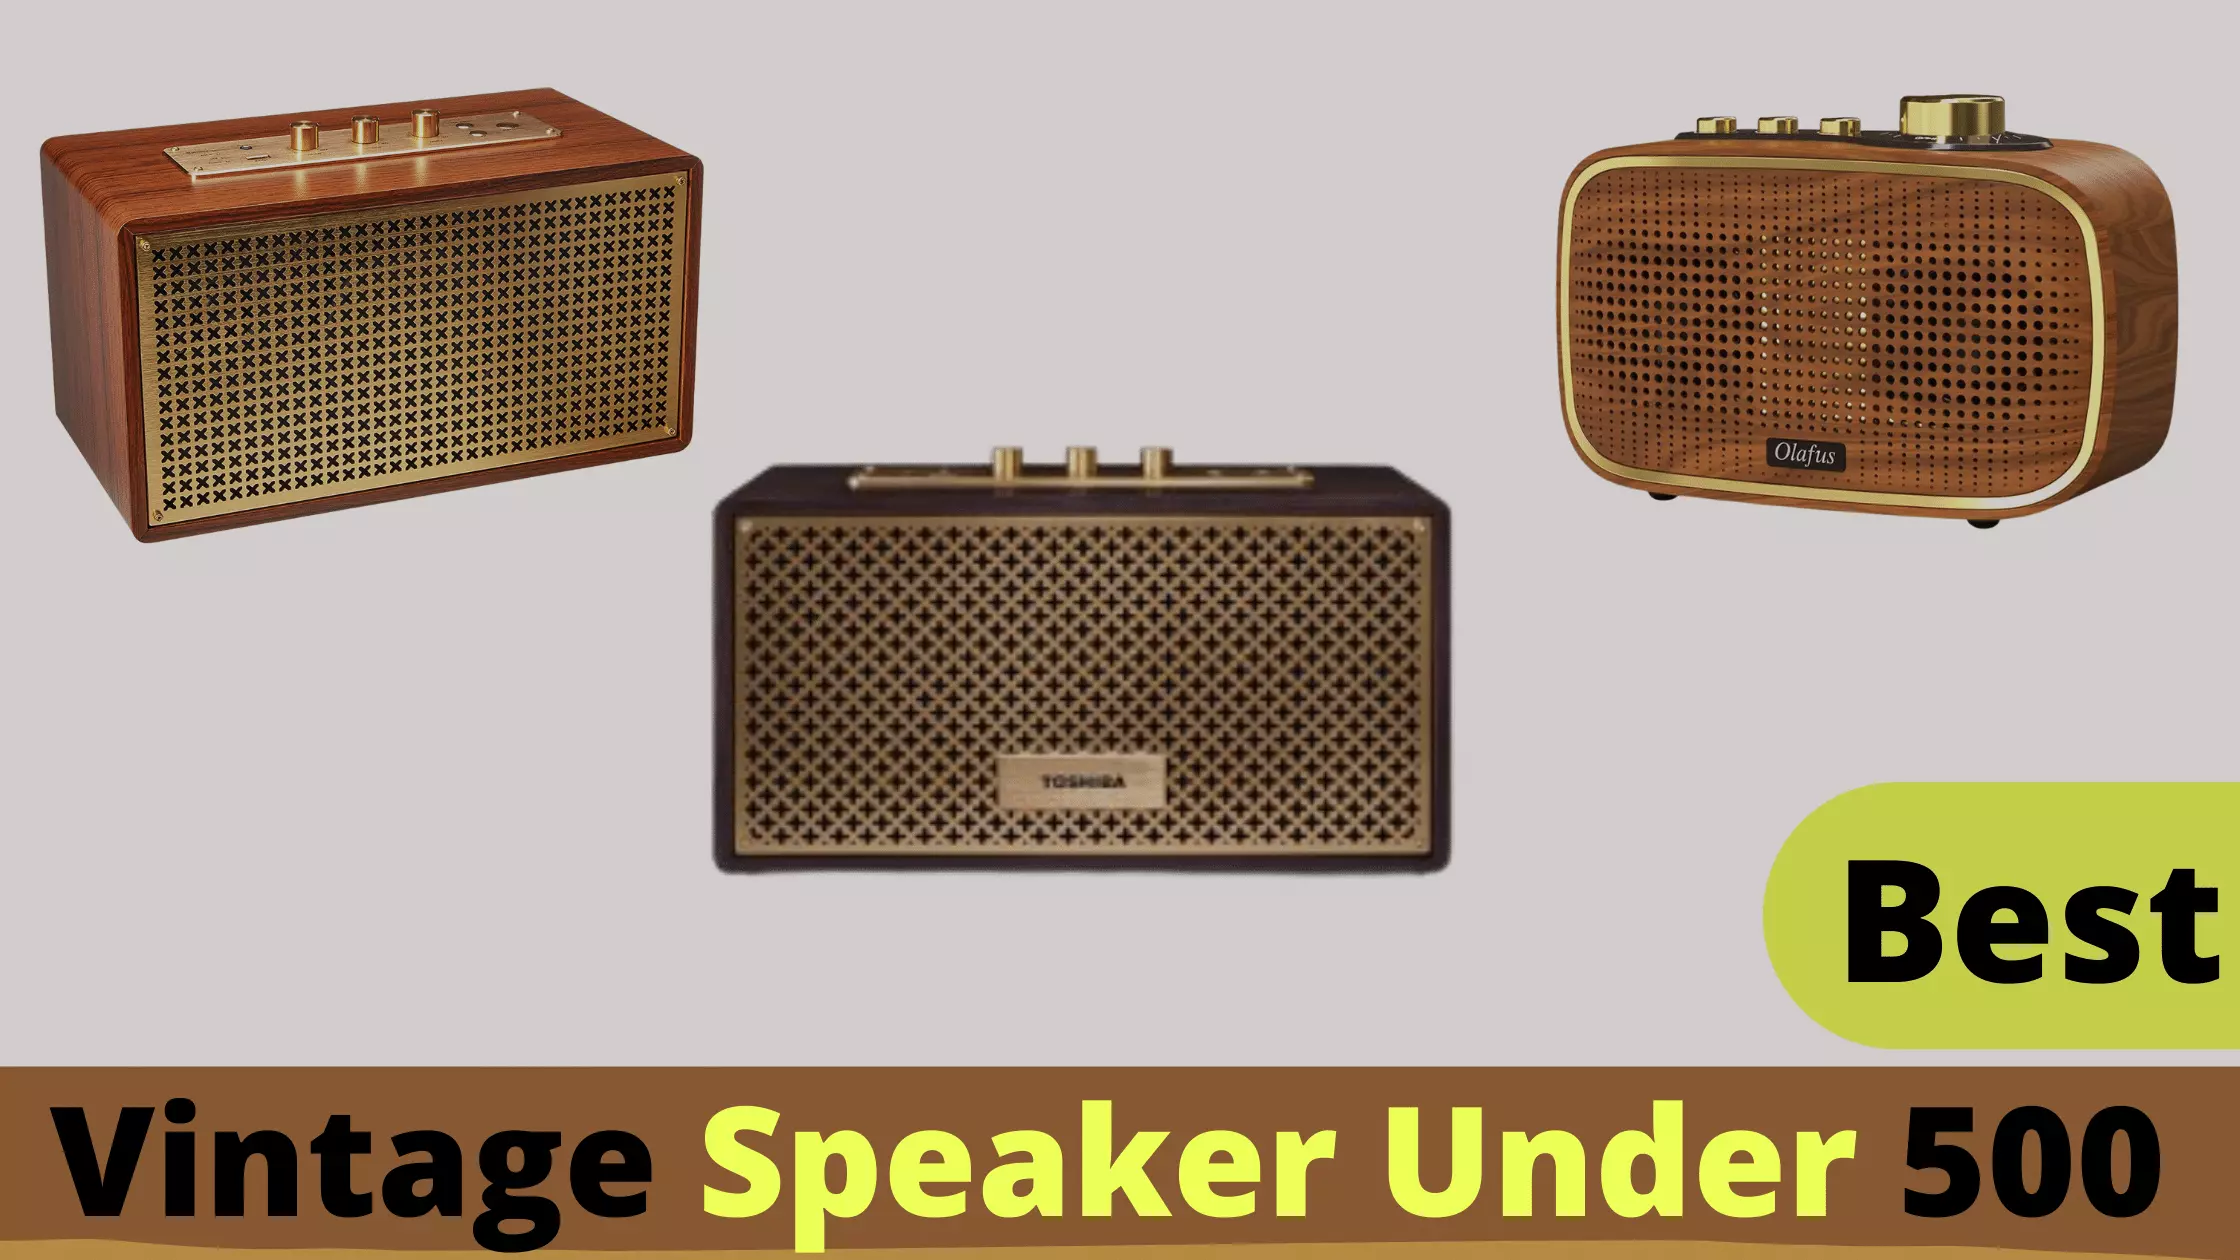 Top 10 Best Vintage Speakers Under $500 Reviews